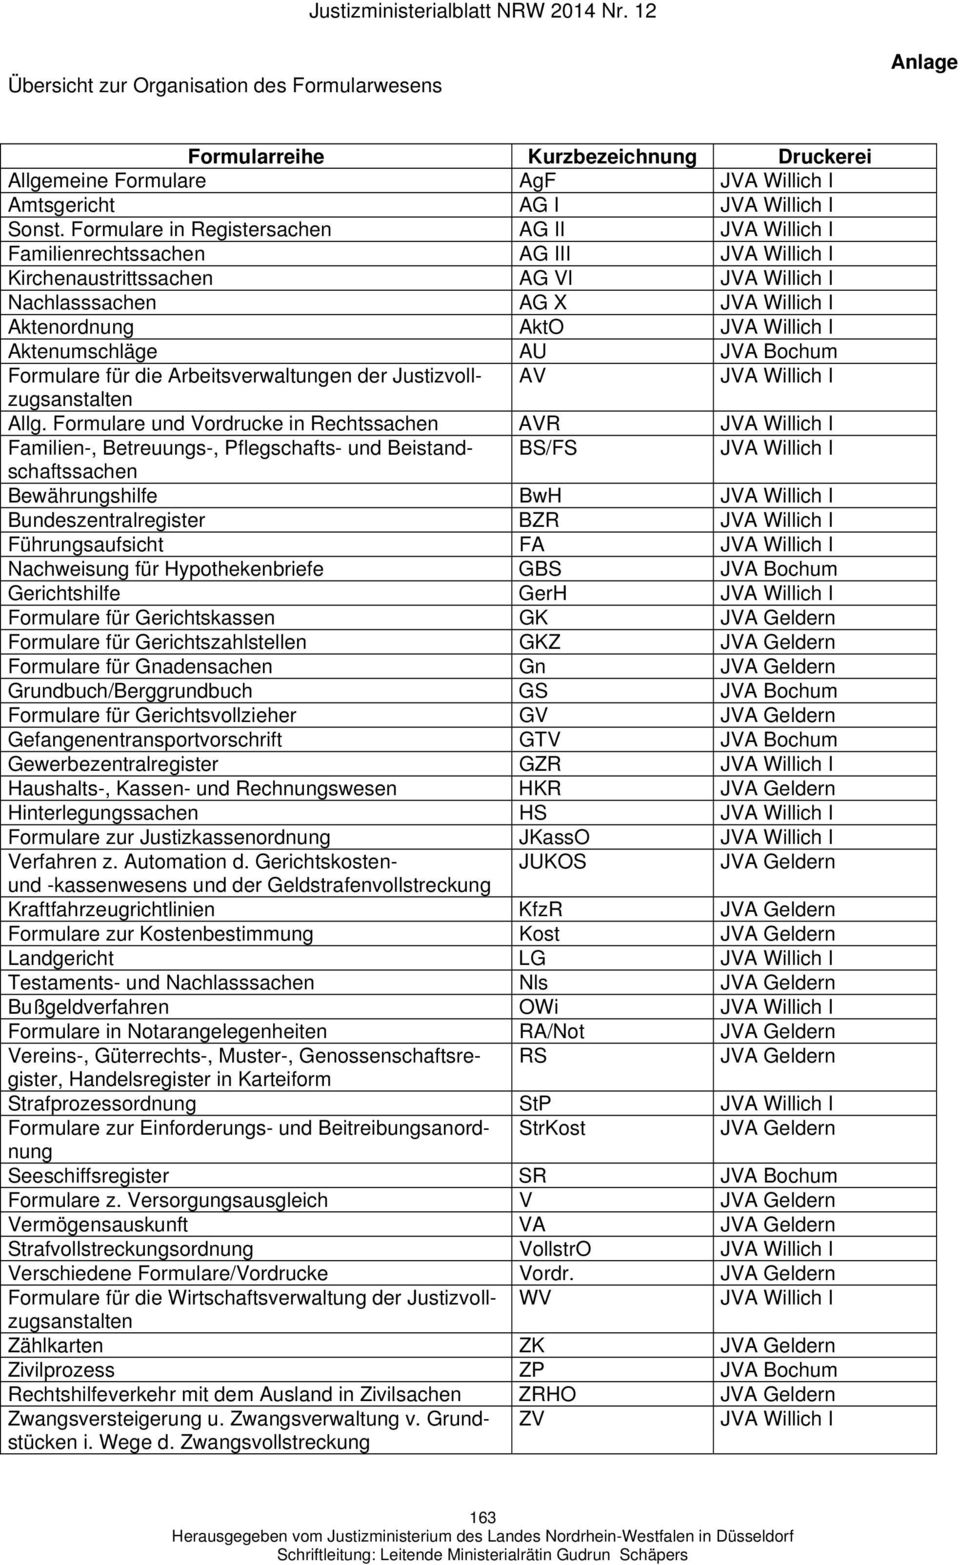 Aktenumschläge AU JVA Bochum Formulare für die Arbeitsverwaltungen der Justizvollzugsanstalten AV JVA Willich I Allg.